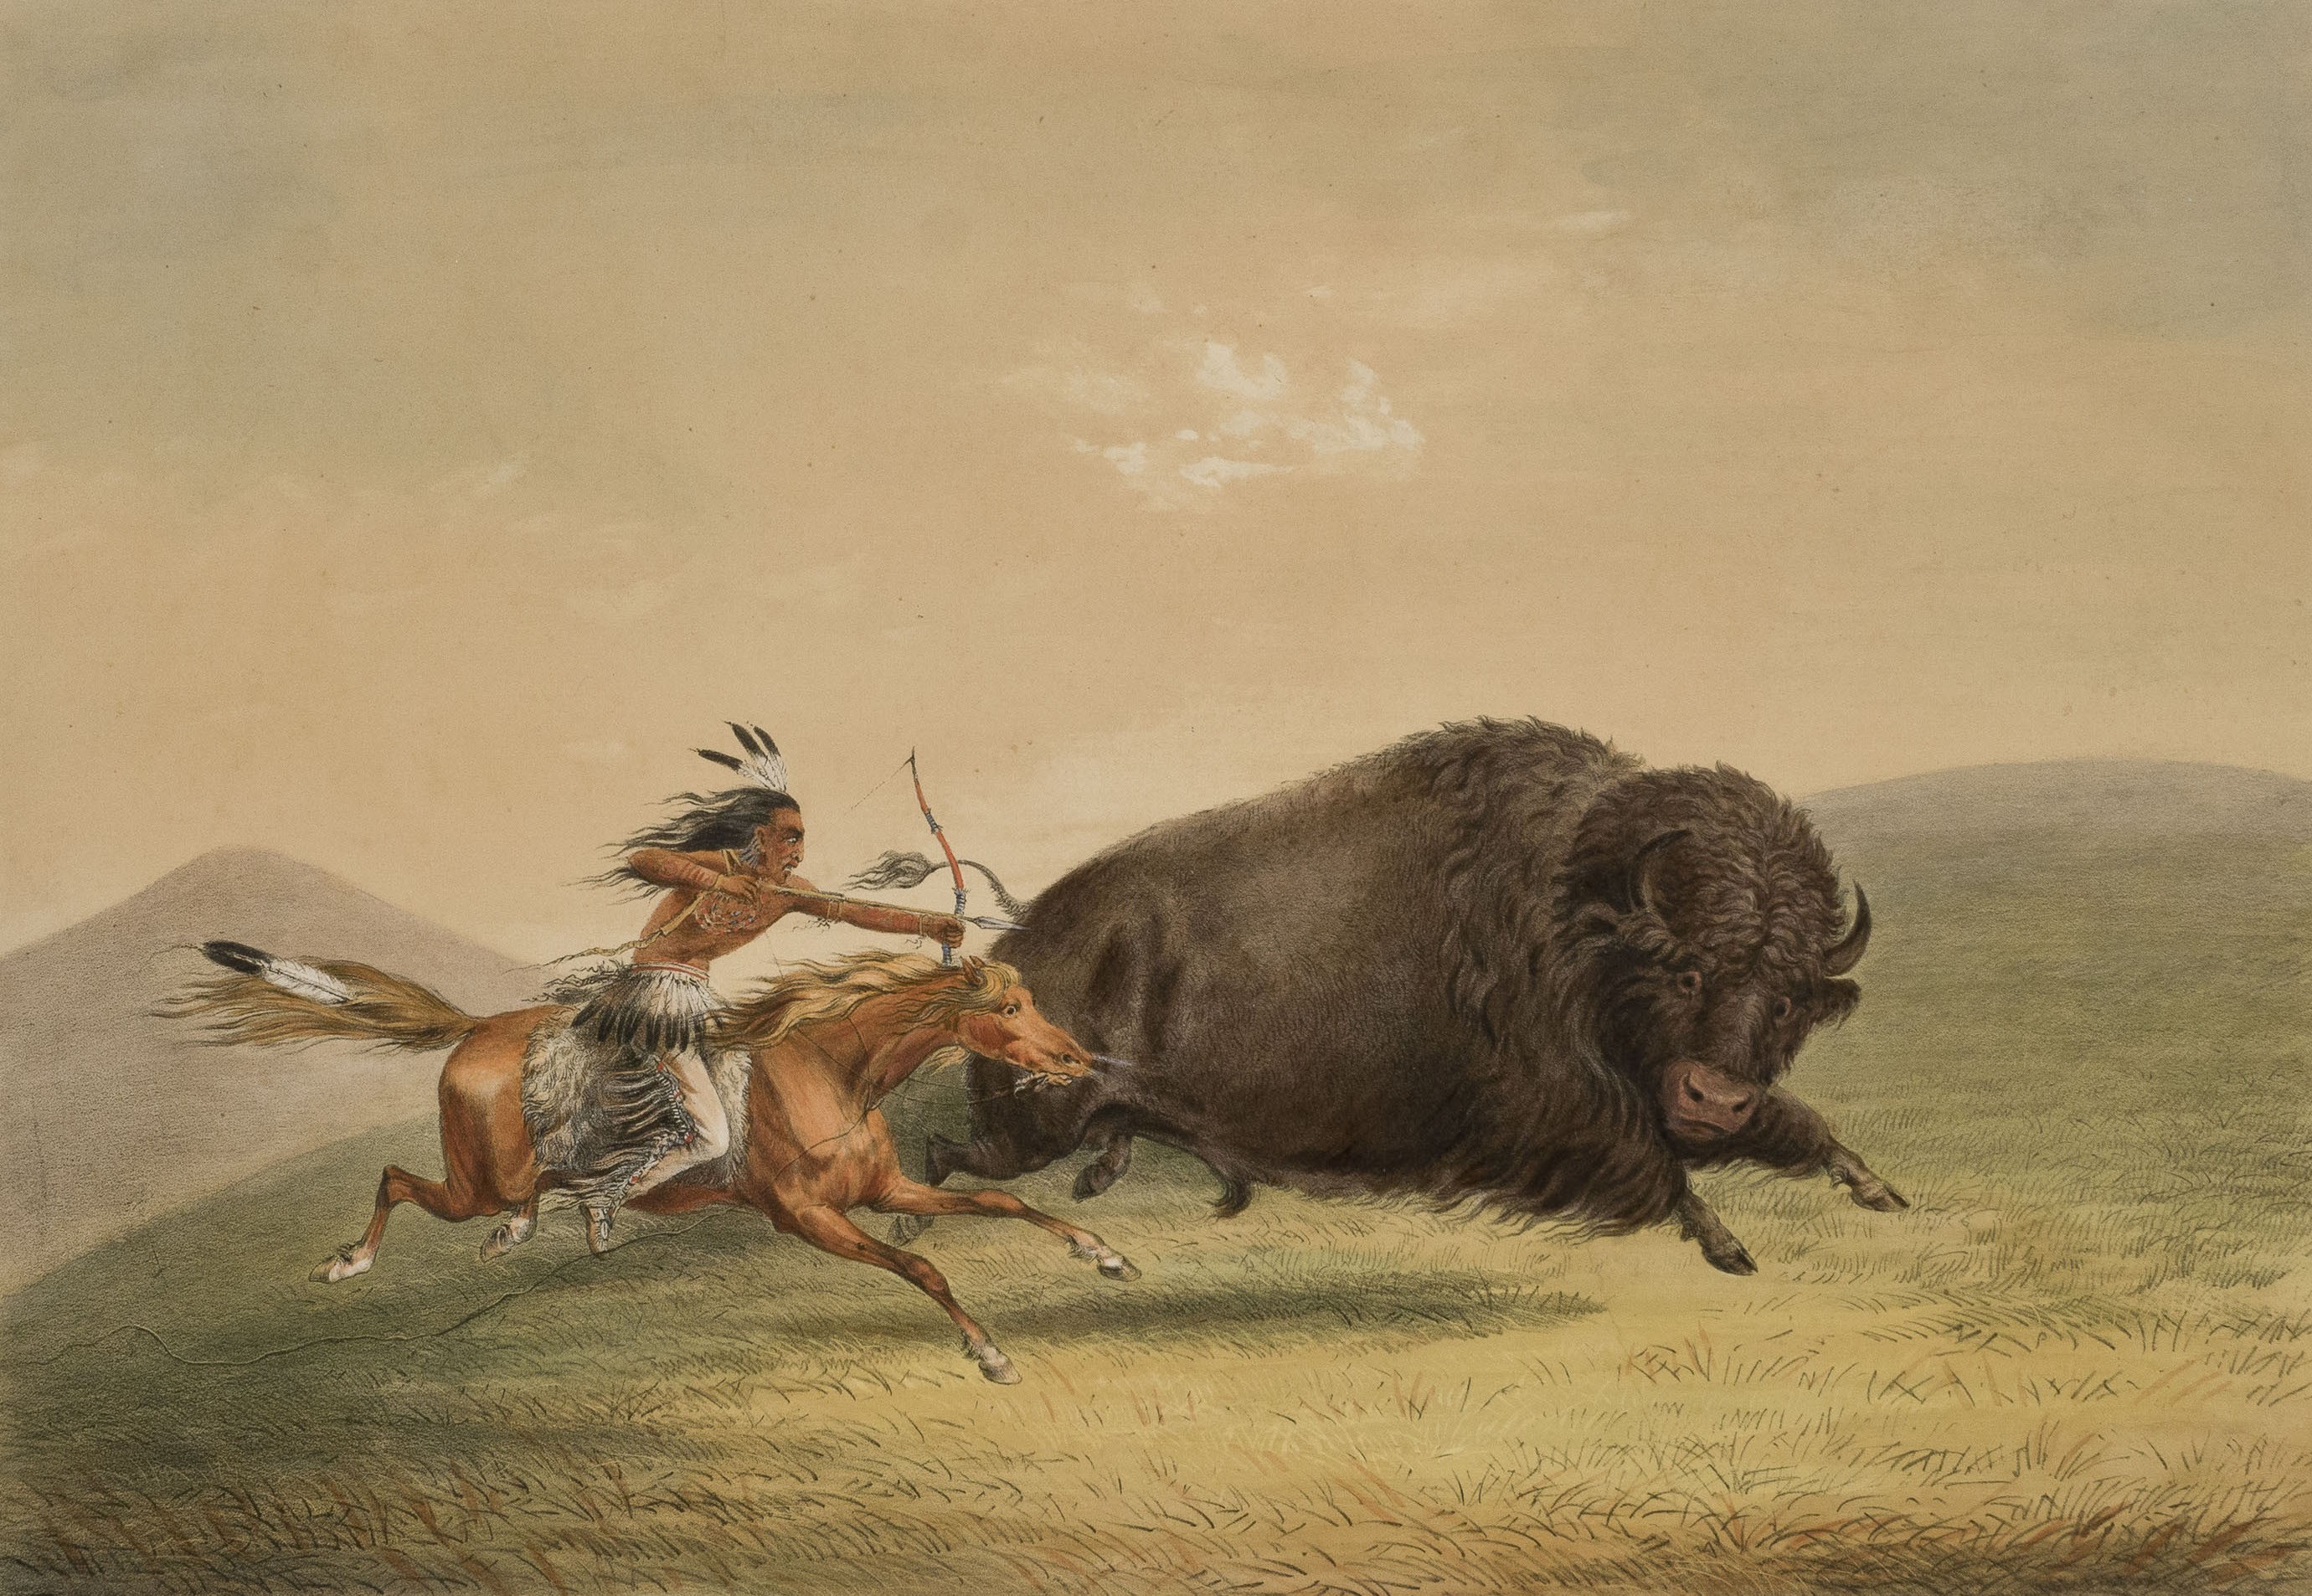 Индейцы охотились на бизонов. Индейцы Северной Америки охота на бизонов. Охота на бизонов в Америке. Охота на бизона индейцев. Охота индейцев на бизонов.